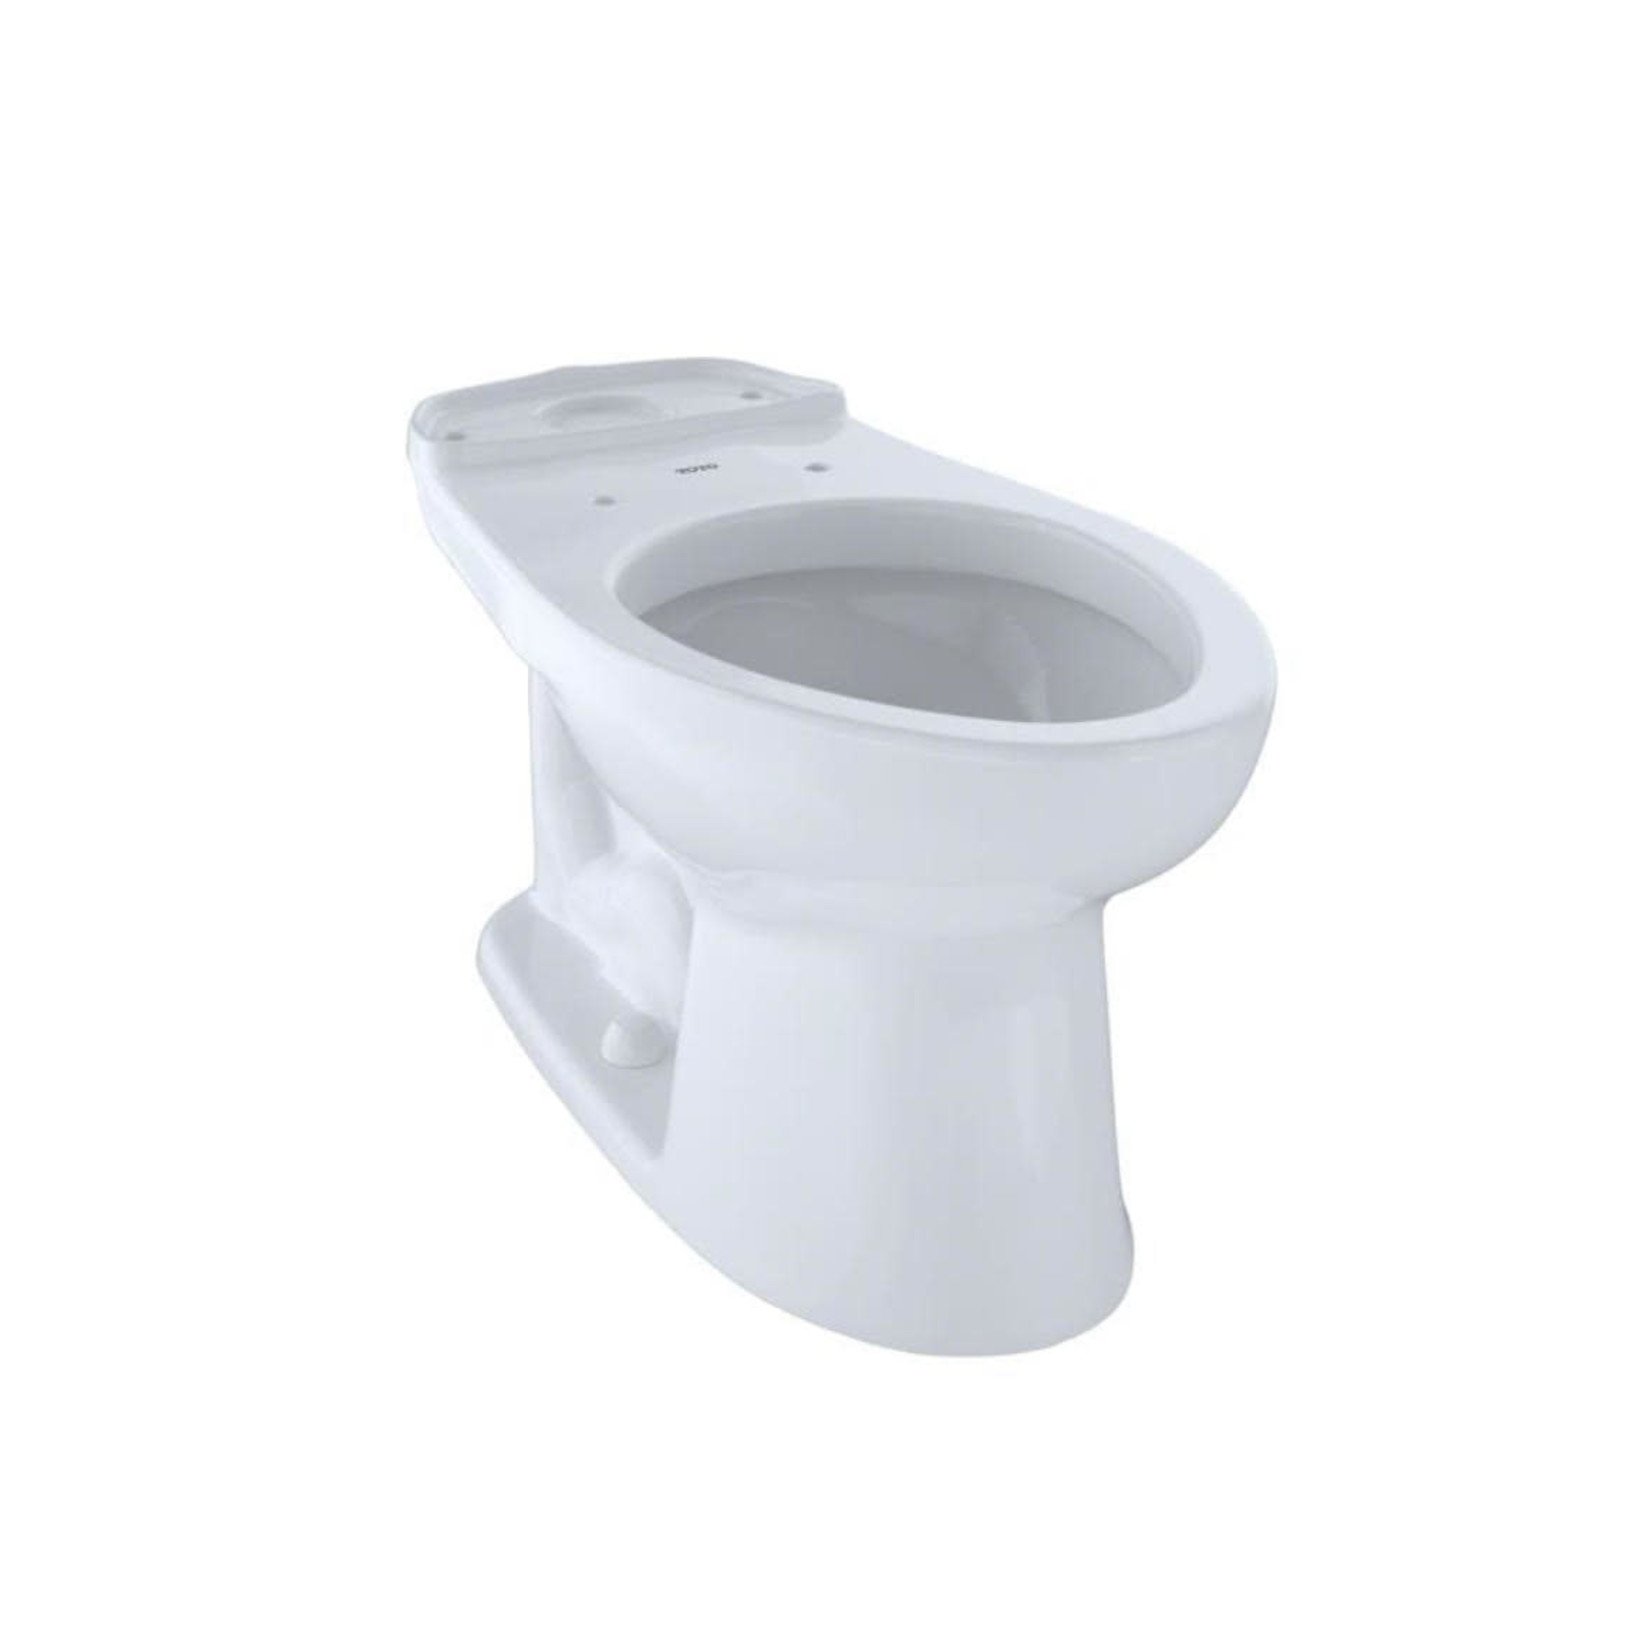 12093 Toto Eco Drake Toilet Bowl